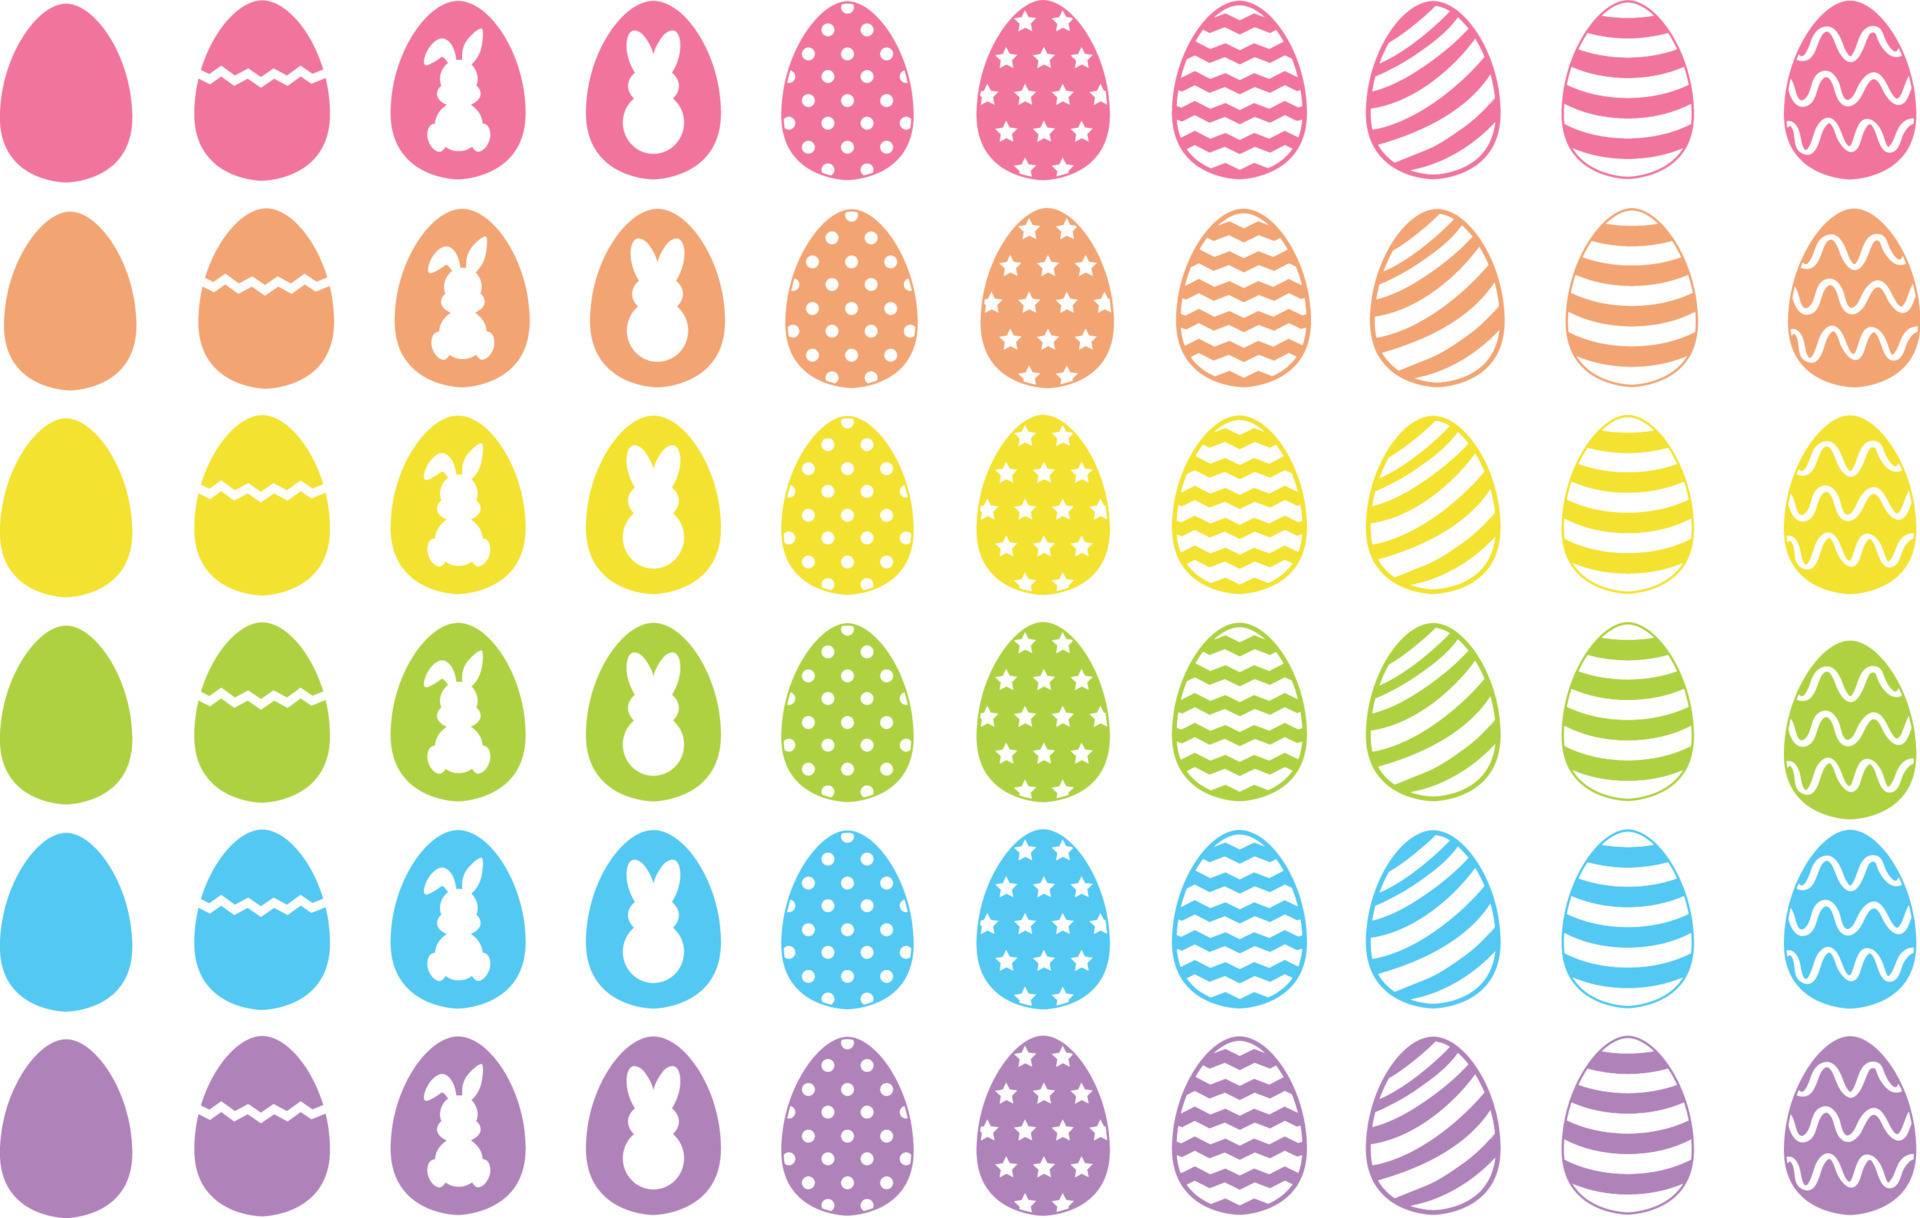 Easter Eggs SVG, Eggs SVG, Easter SVG, Easter Egg Cut File, Egg Clipart